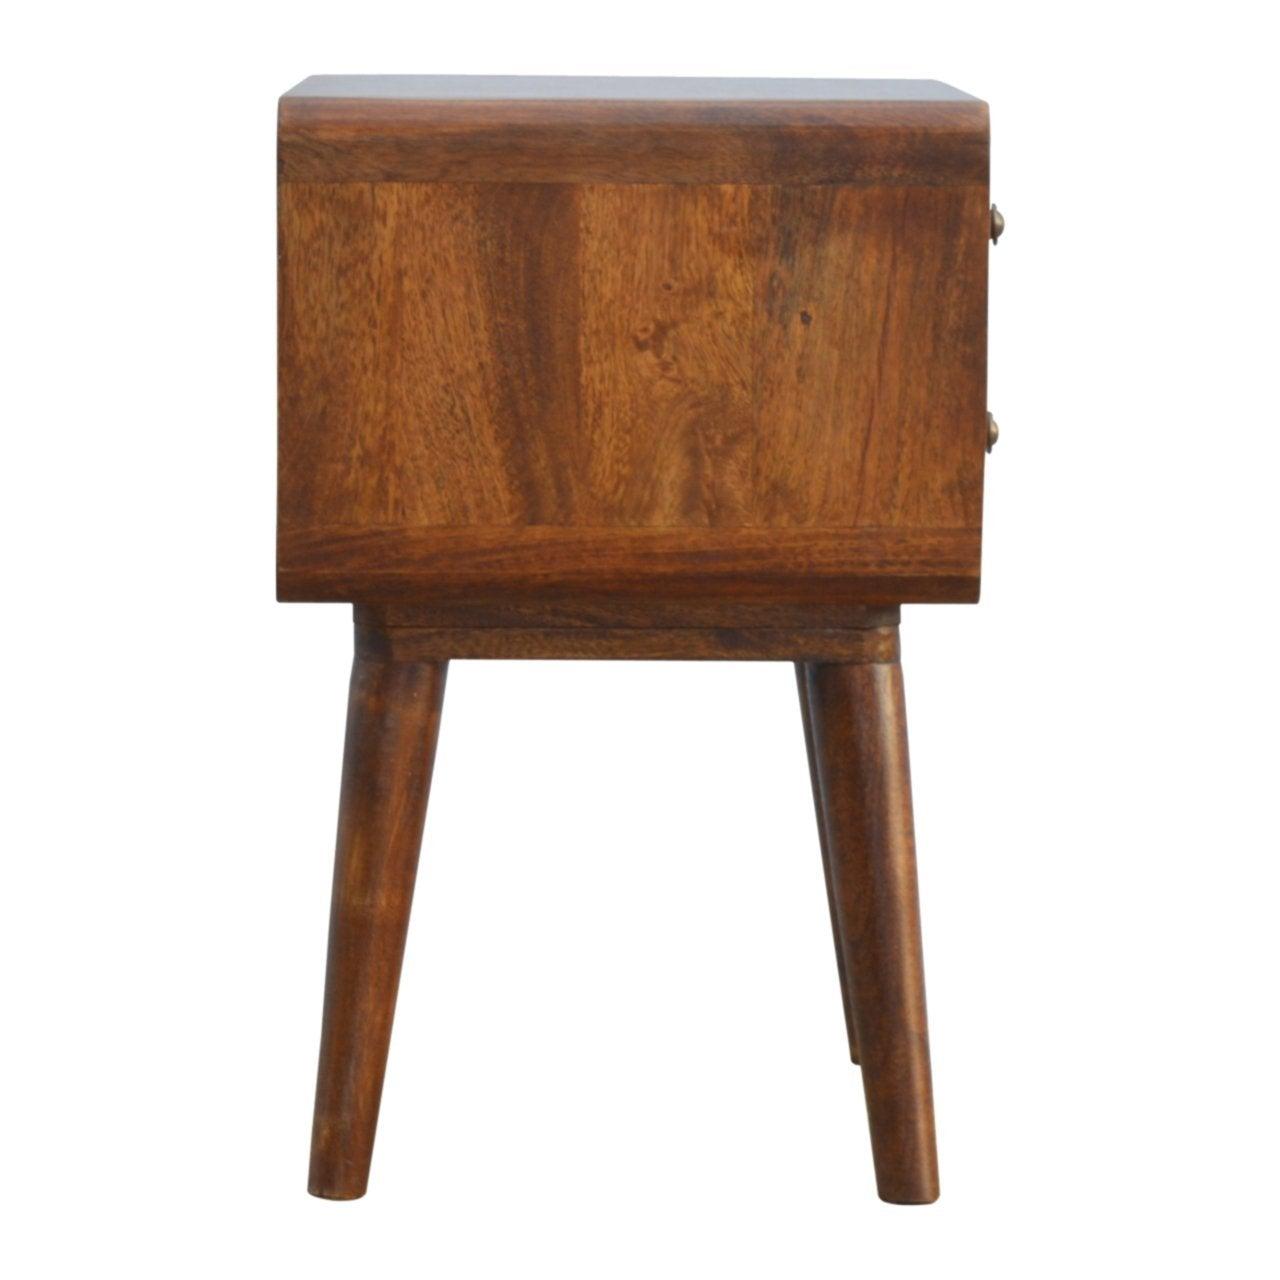 Curved chestnut bedside table - crimblefest furniture - image 8